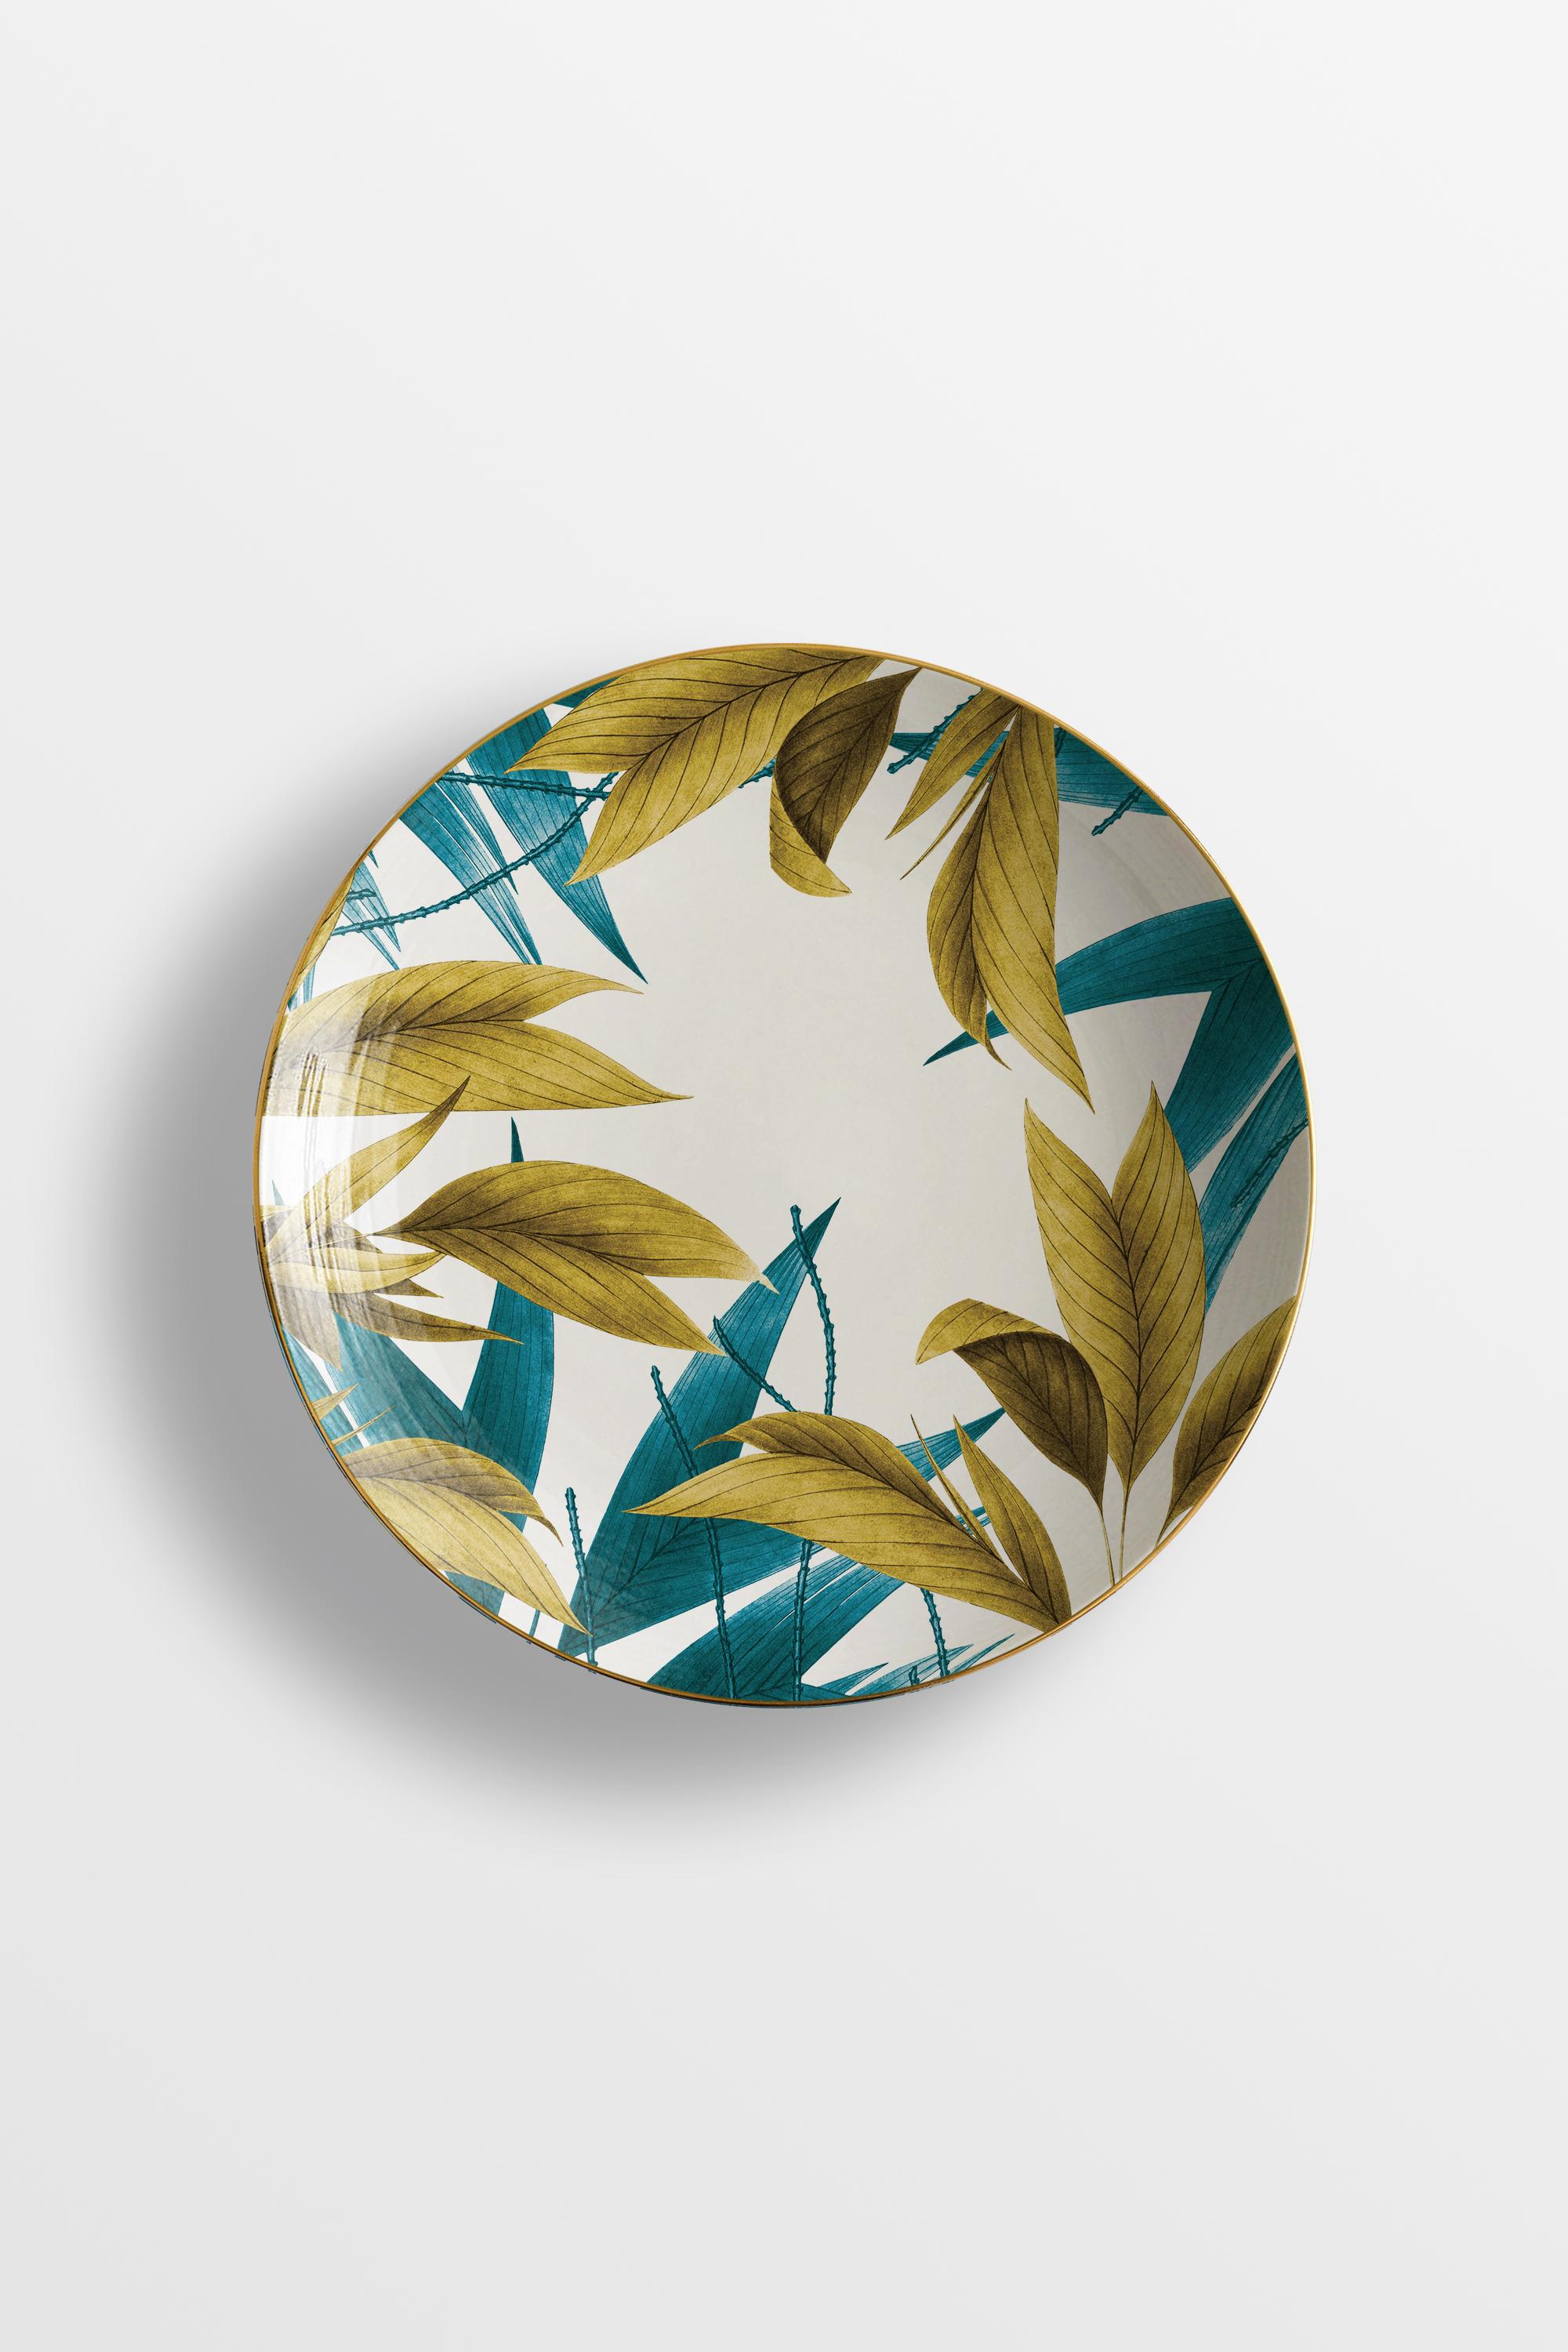 Molded Las Palmas, Six Contemporary Porcelain soup plates with Decorative Design For Sale